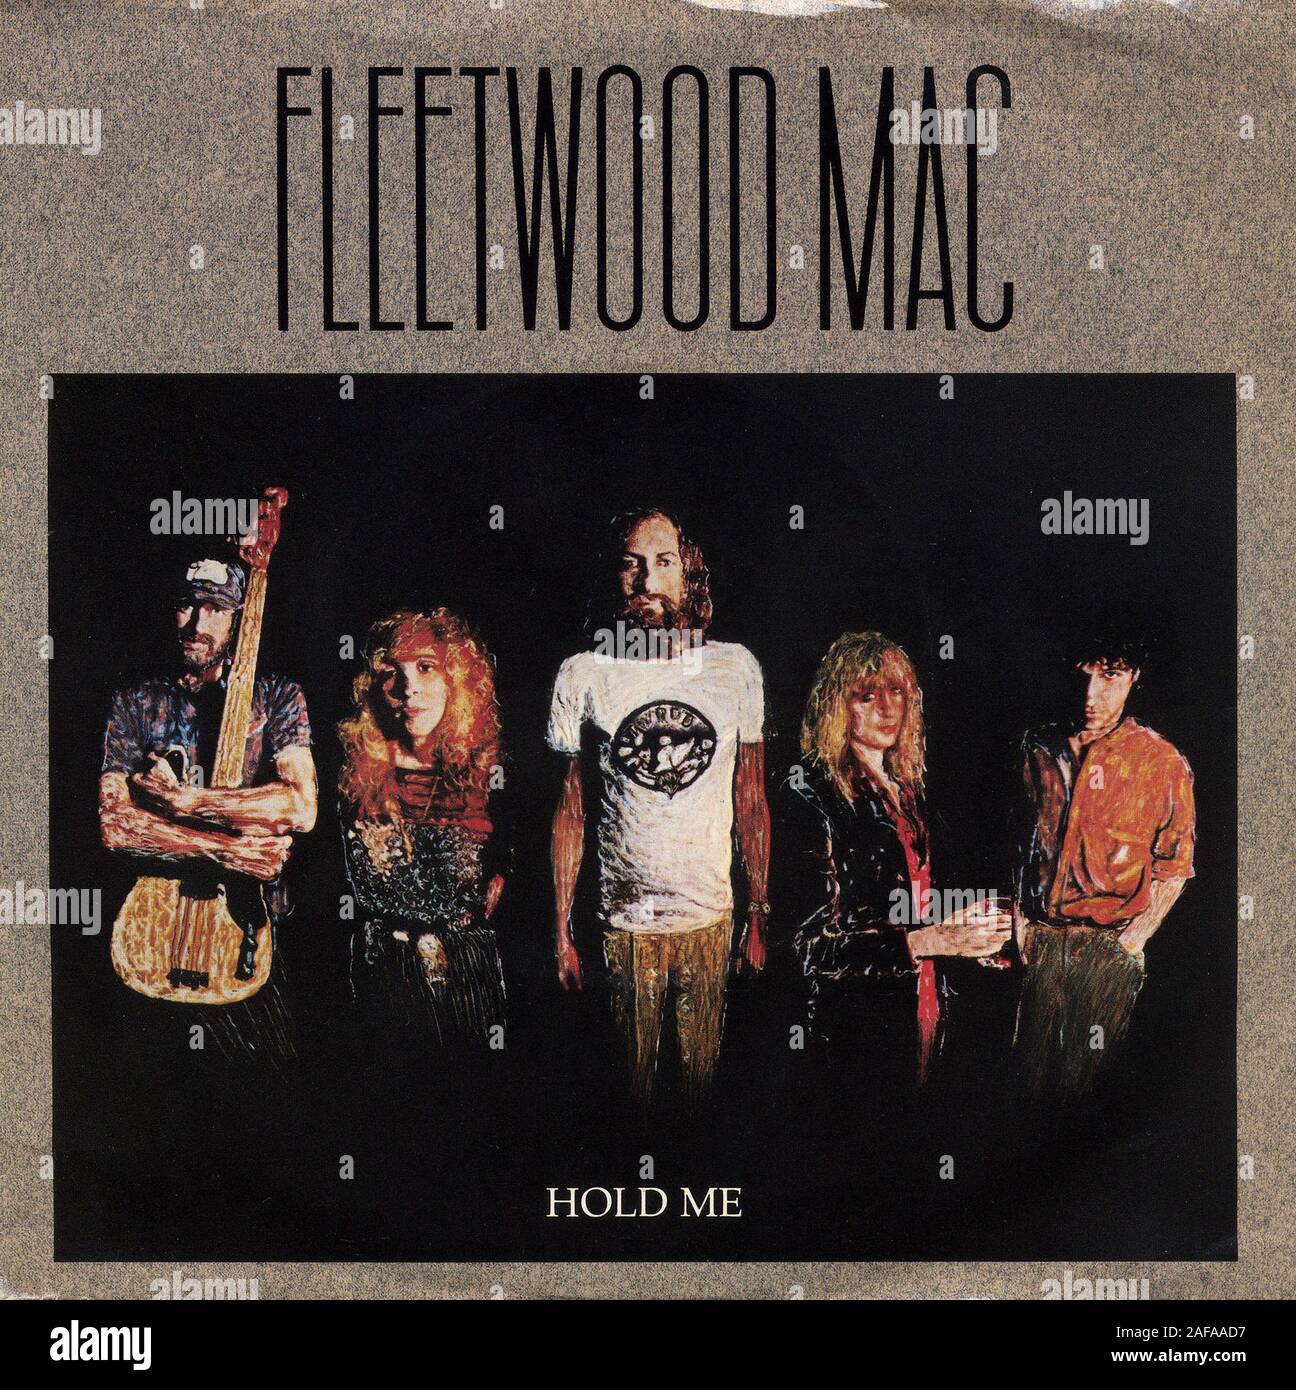 Fleetwood Mac - Hold Me - Vintage vinyl album cover Stock Photo